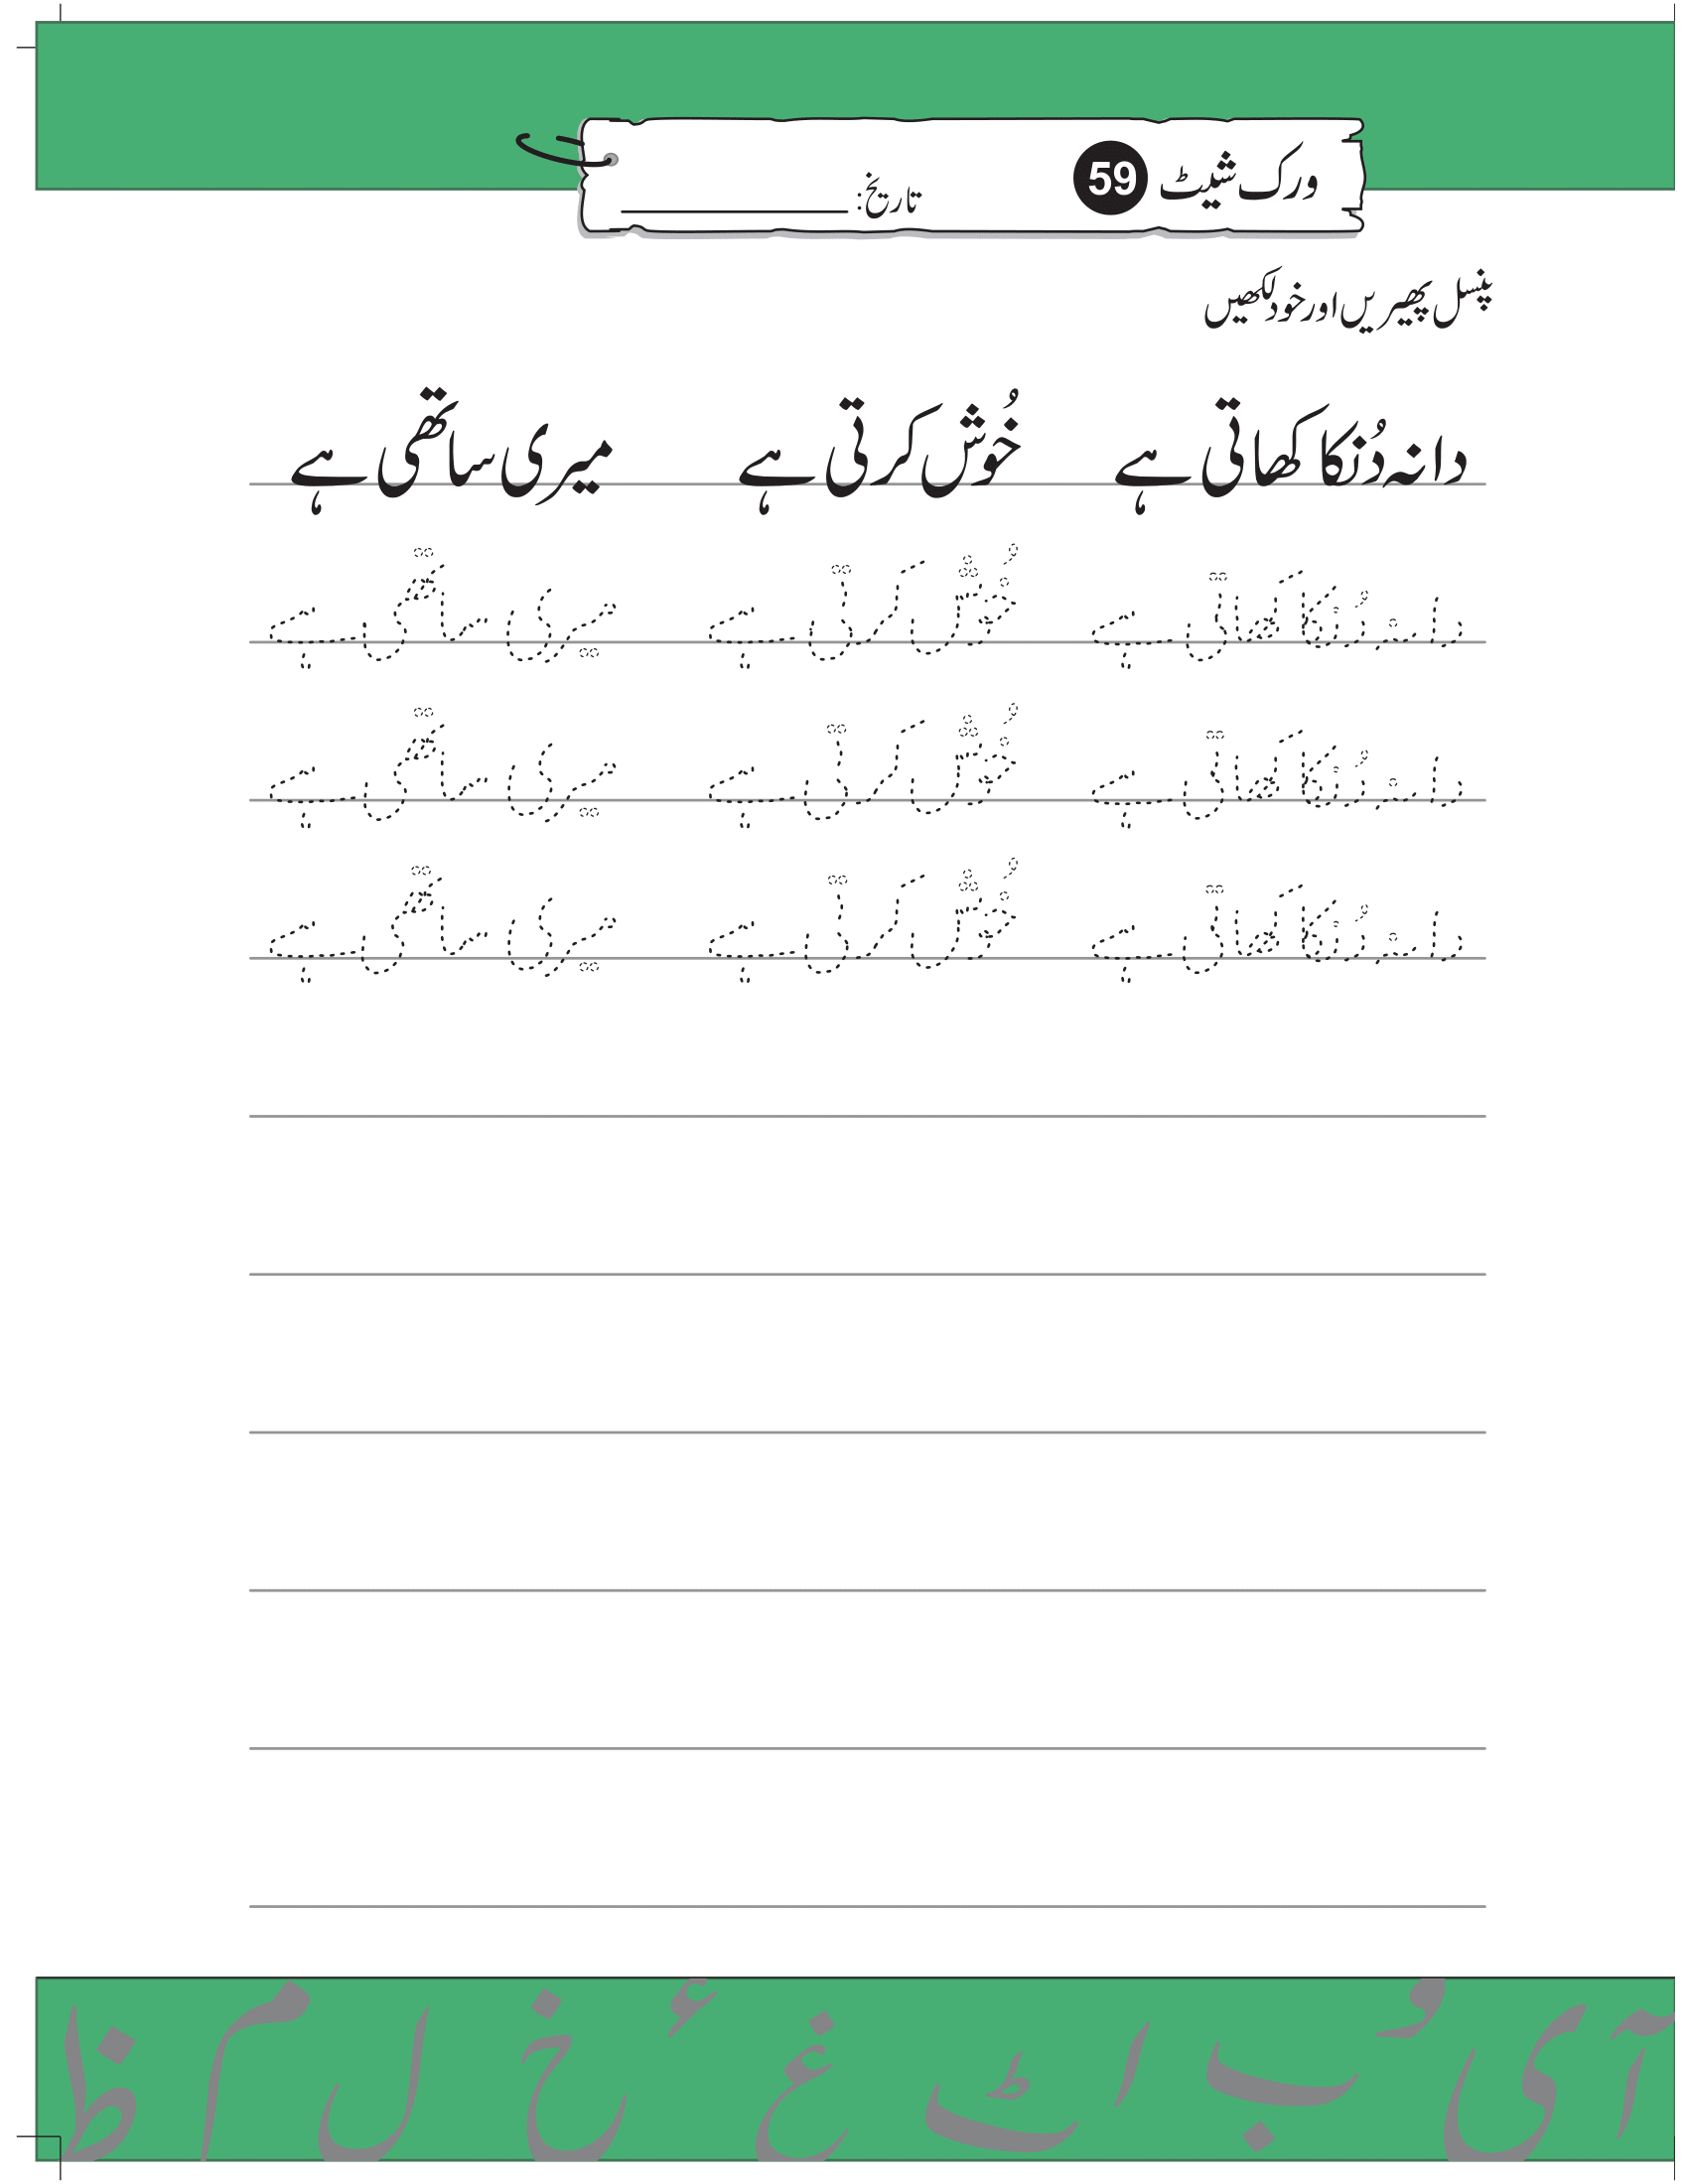 Urdu Worksheets for K.G Prep Pack 2 Kindergarten - Free Printable ...